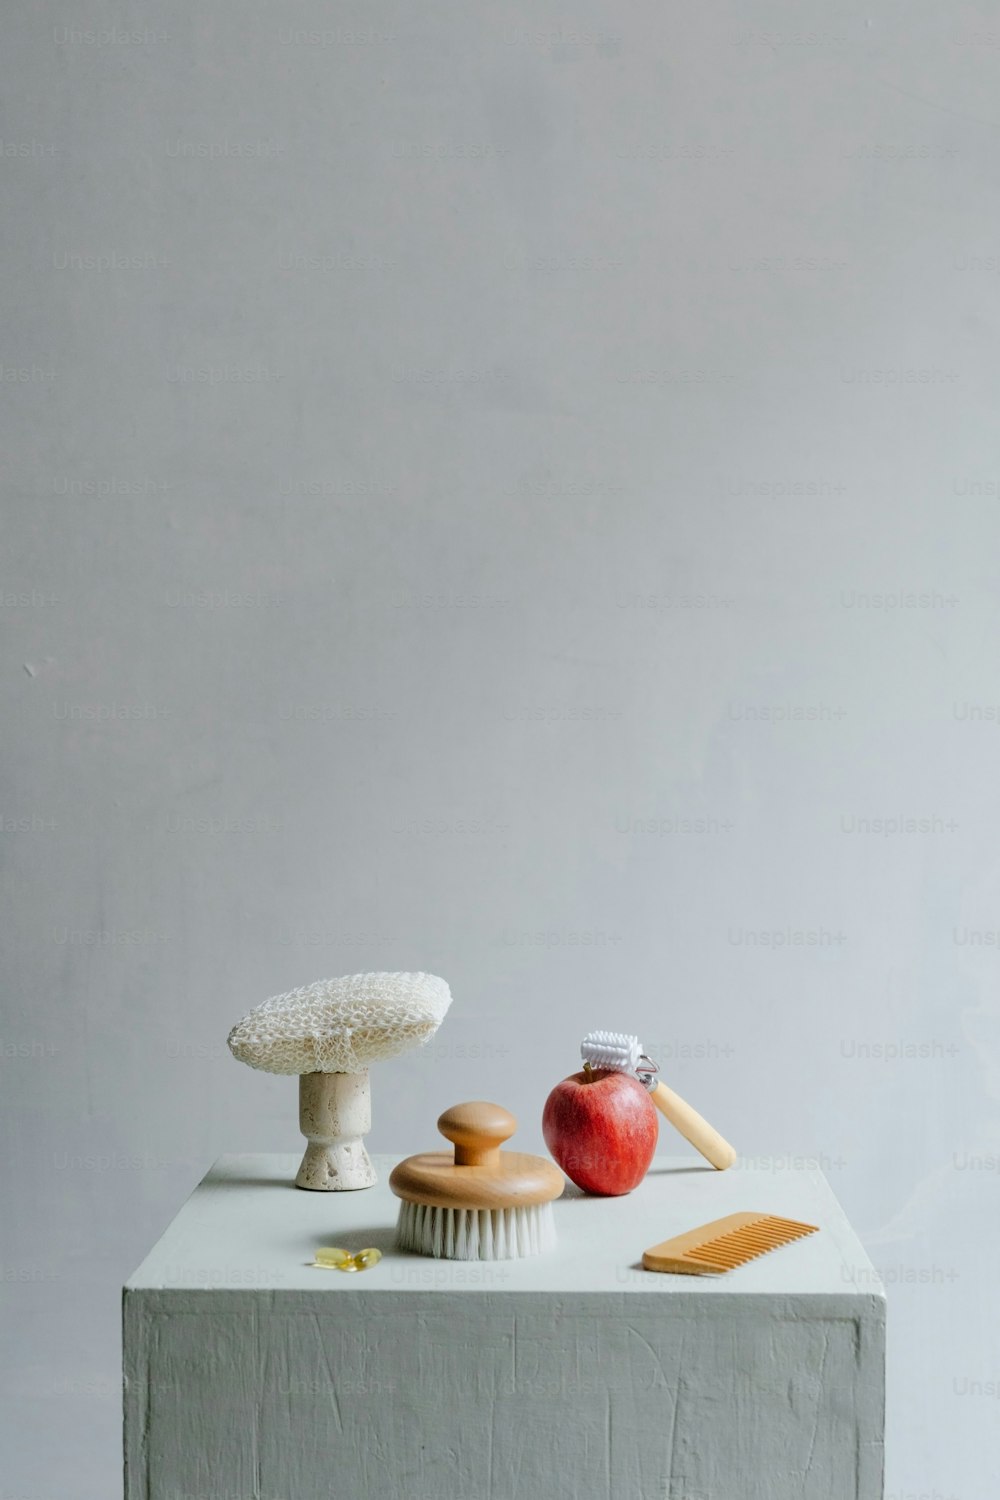 사과와 컵케이크를 얹은 테이블